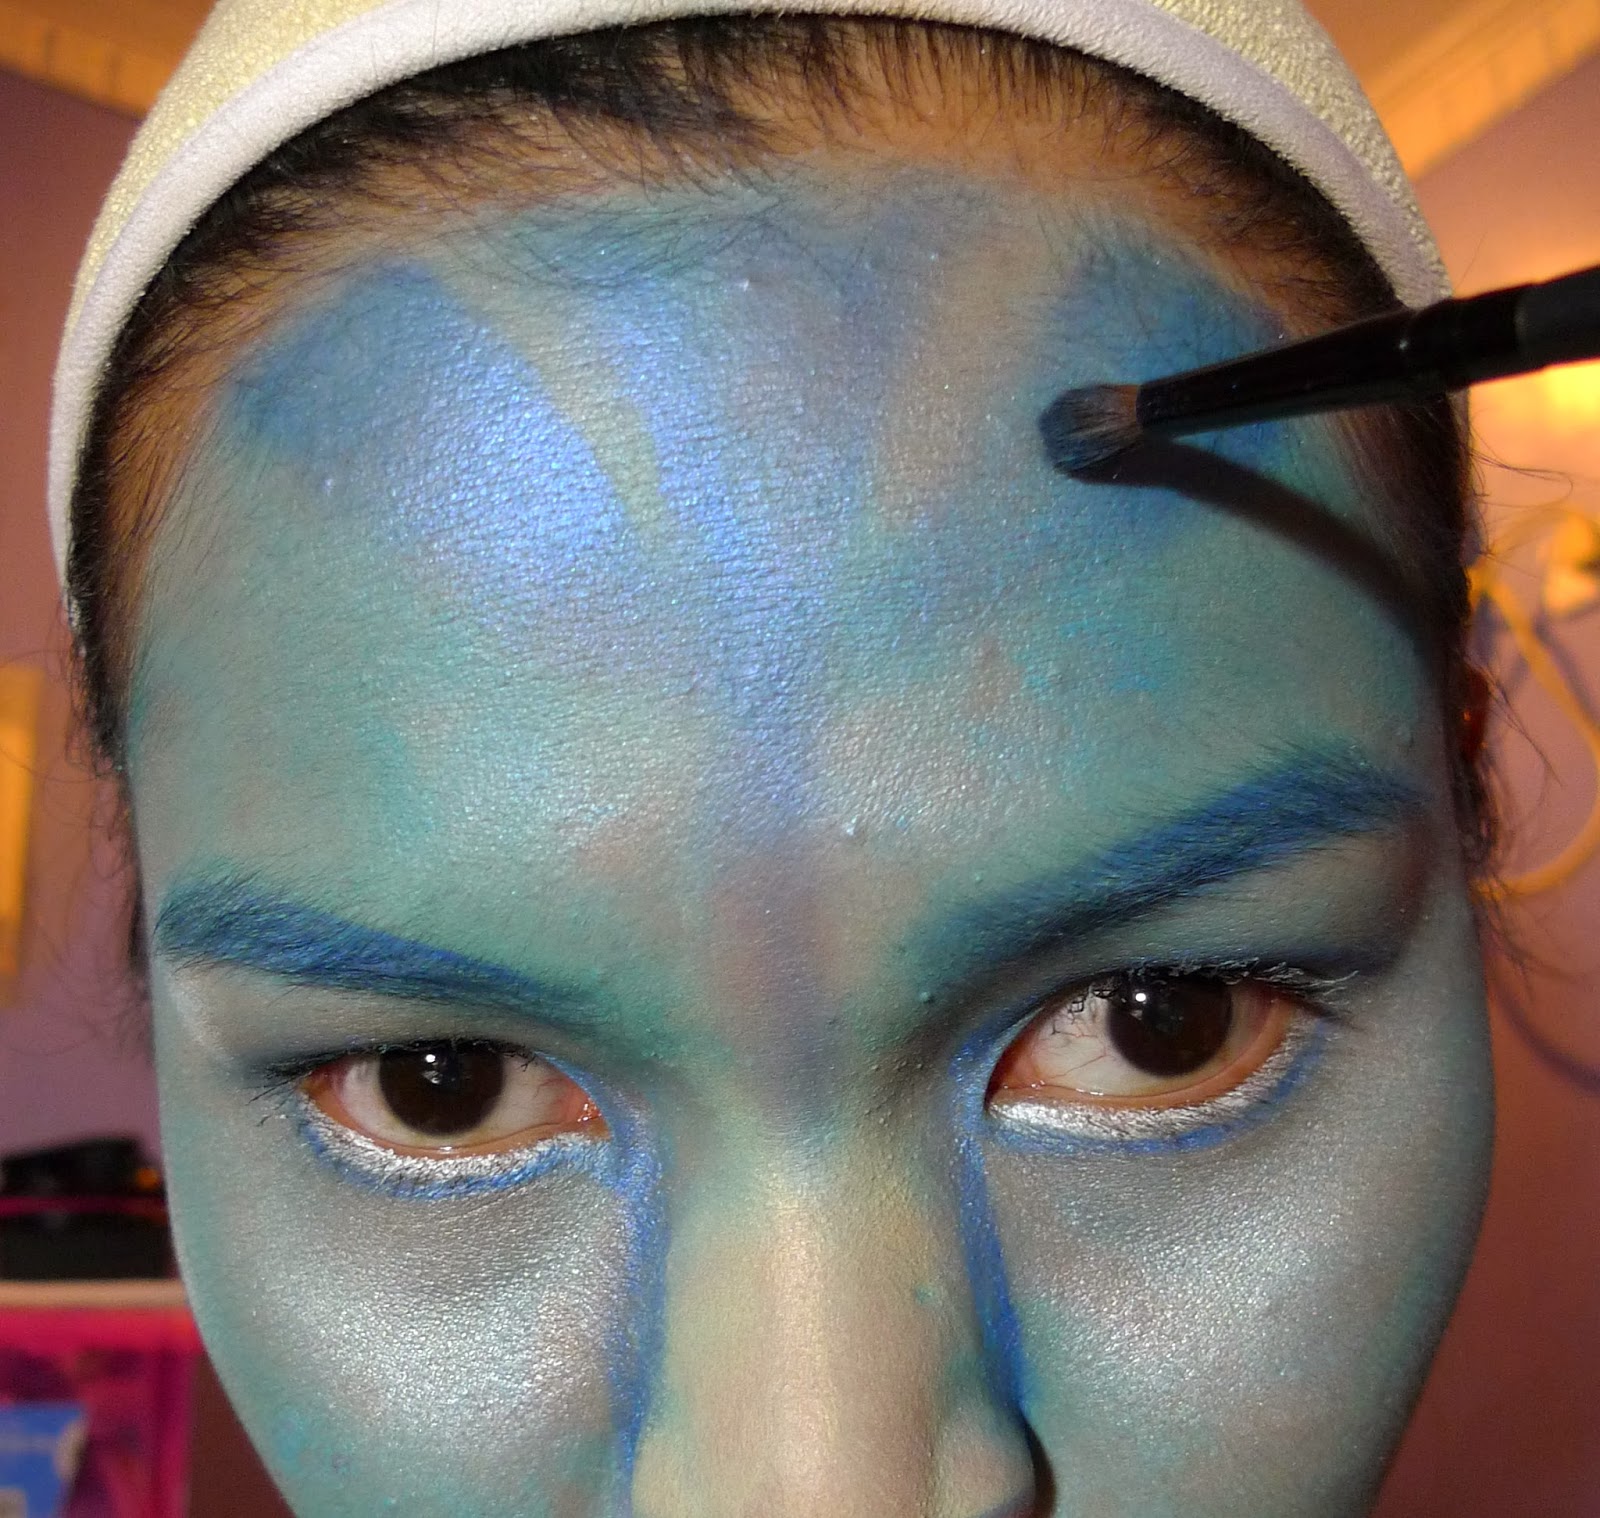 Halloween 2013 Avatar Makeup The Beauty Junkee